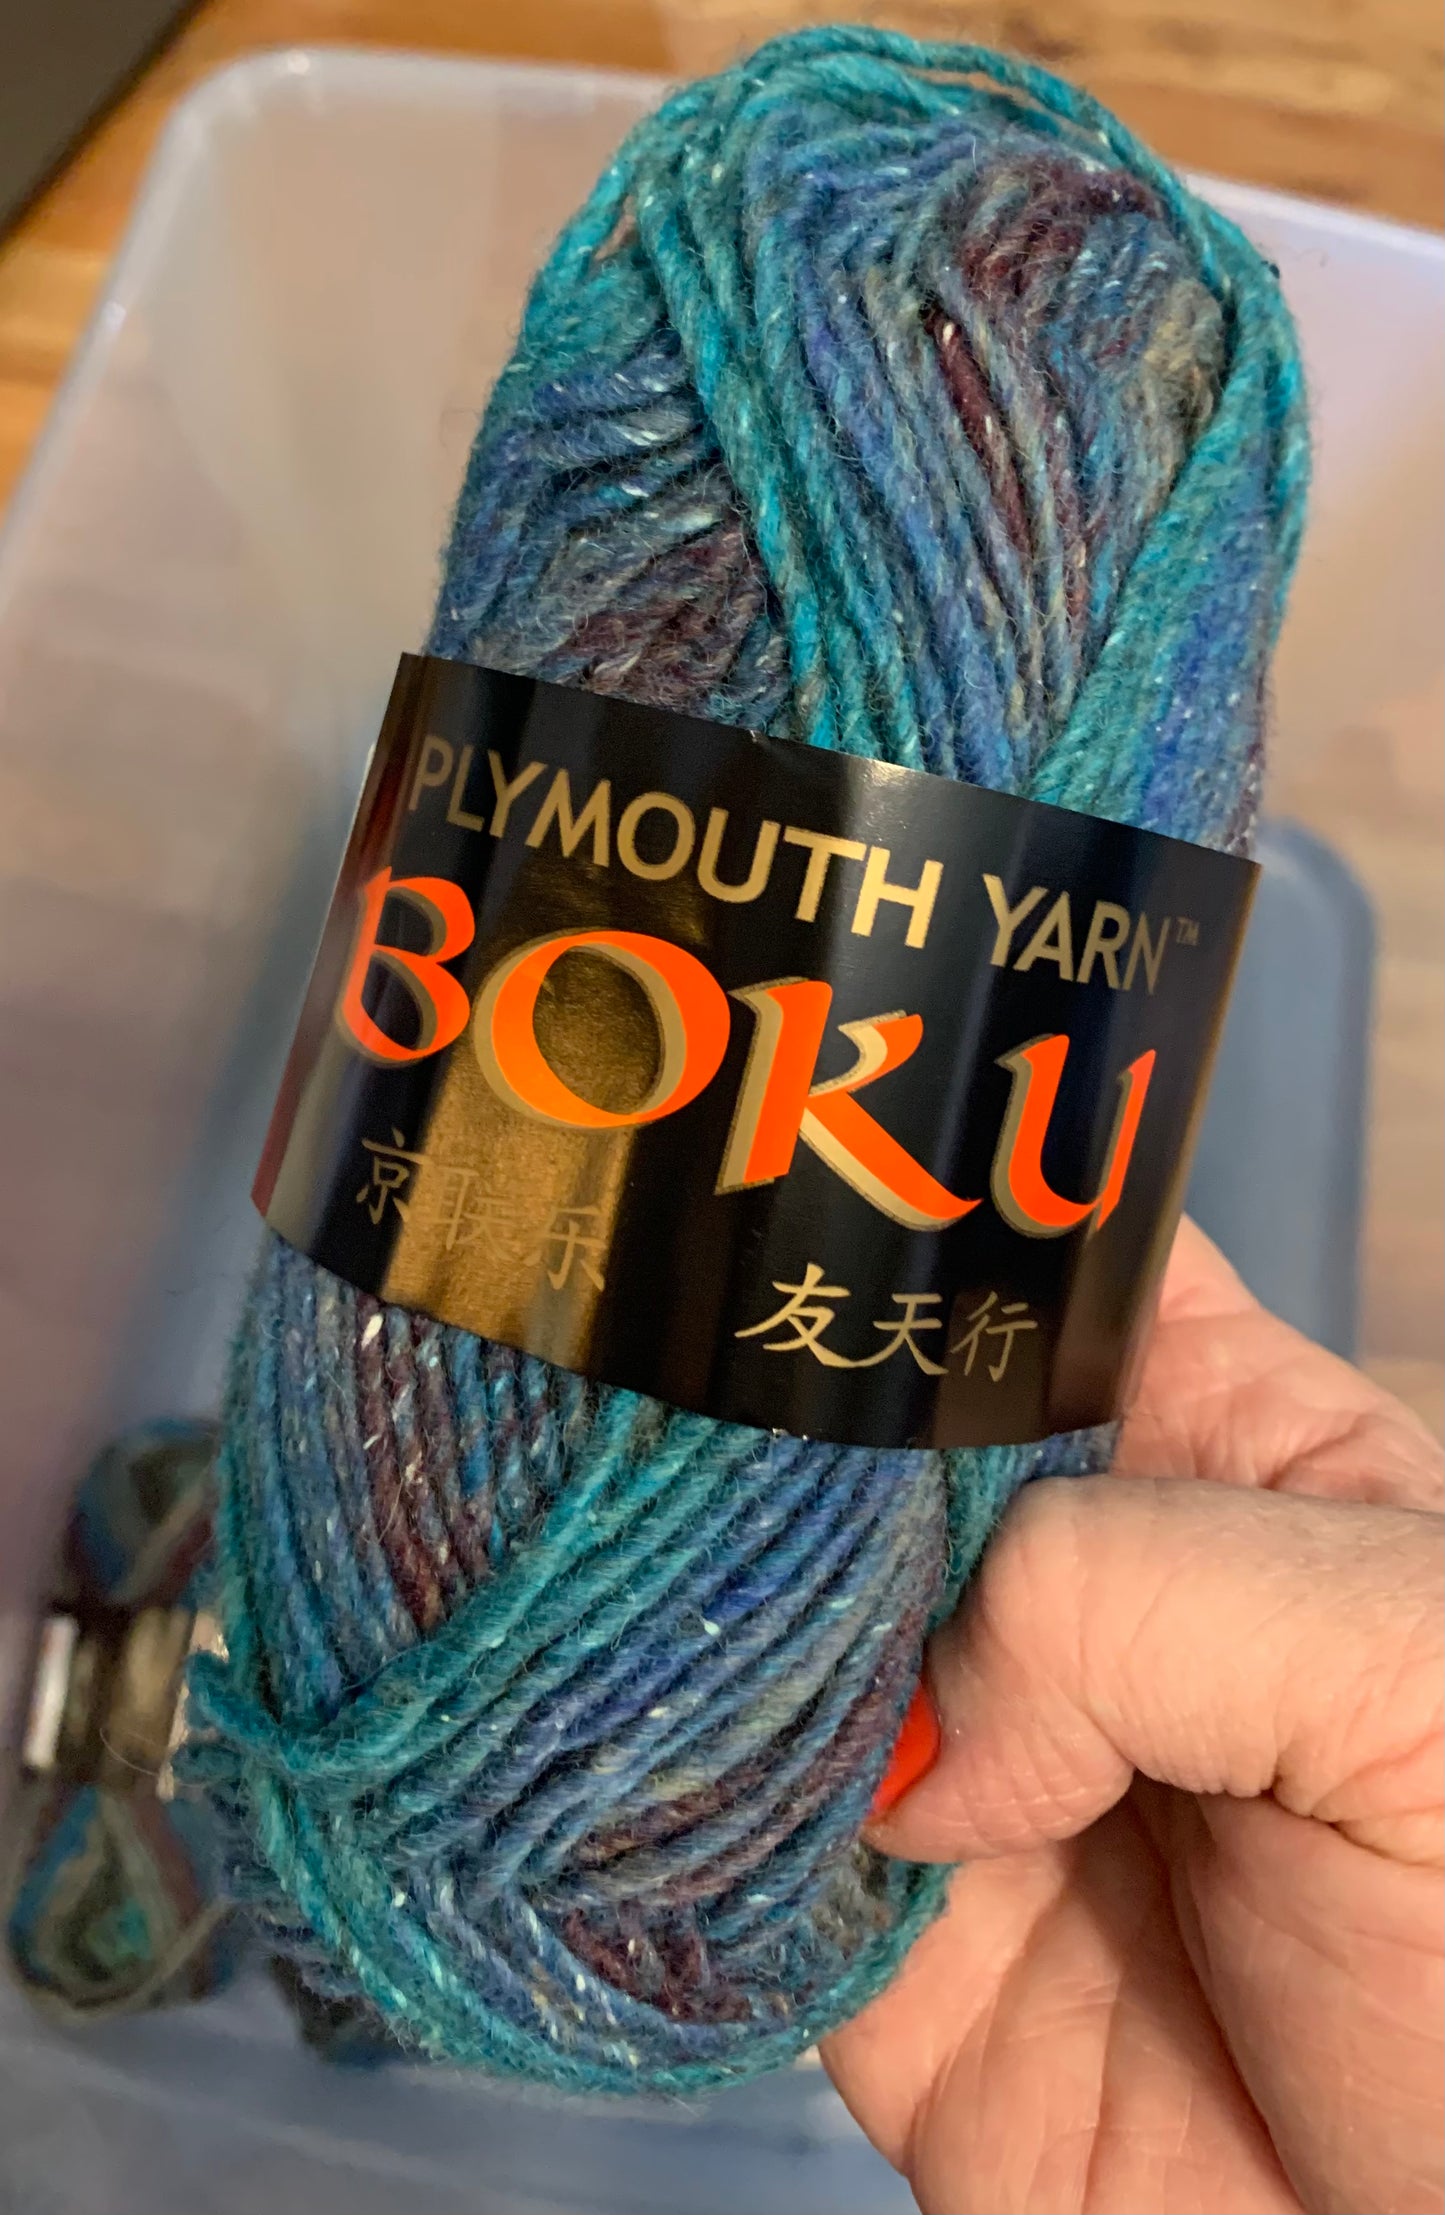 Plymouth Yarn Boku - Color 10 (aqua gray variegated)